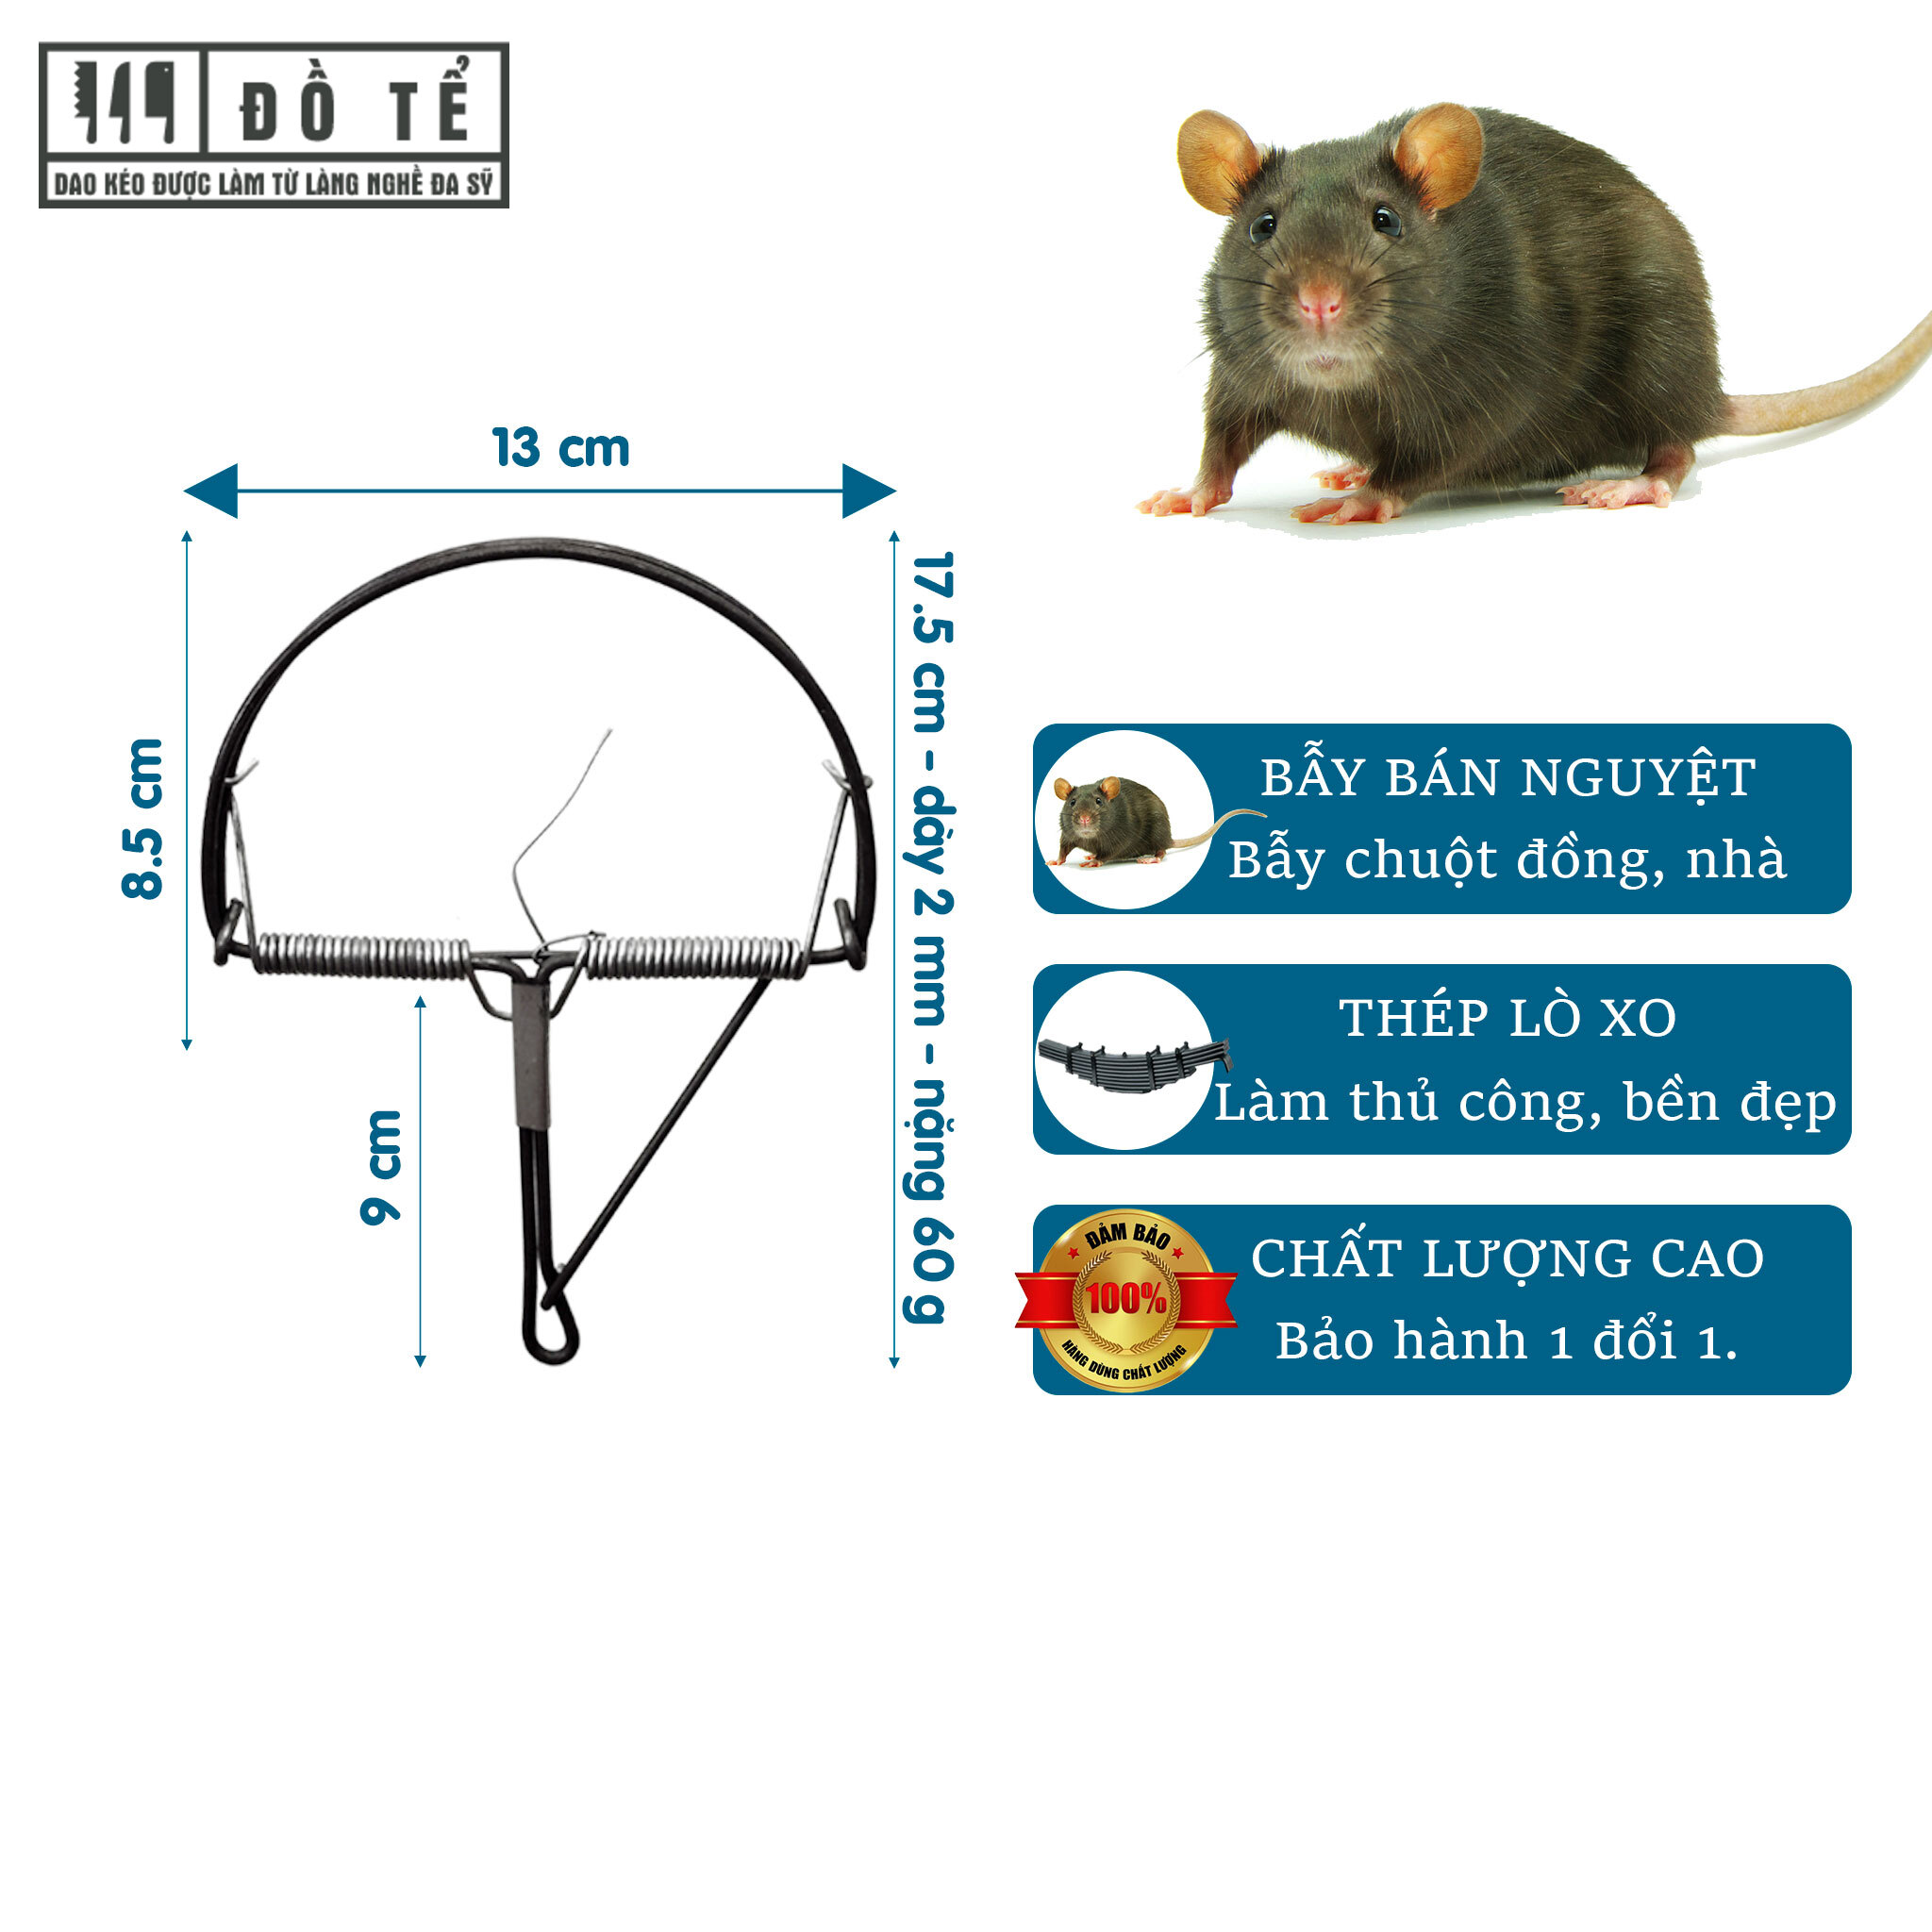 Bẫy chuột bán nguyệt, bẫy chuột. bẫy chuột nhà, chuột đồng, diệt chuột an toàn - Nhà Bếp Đồ Tể - Đa Sỹ - HL38